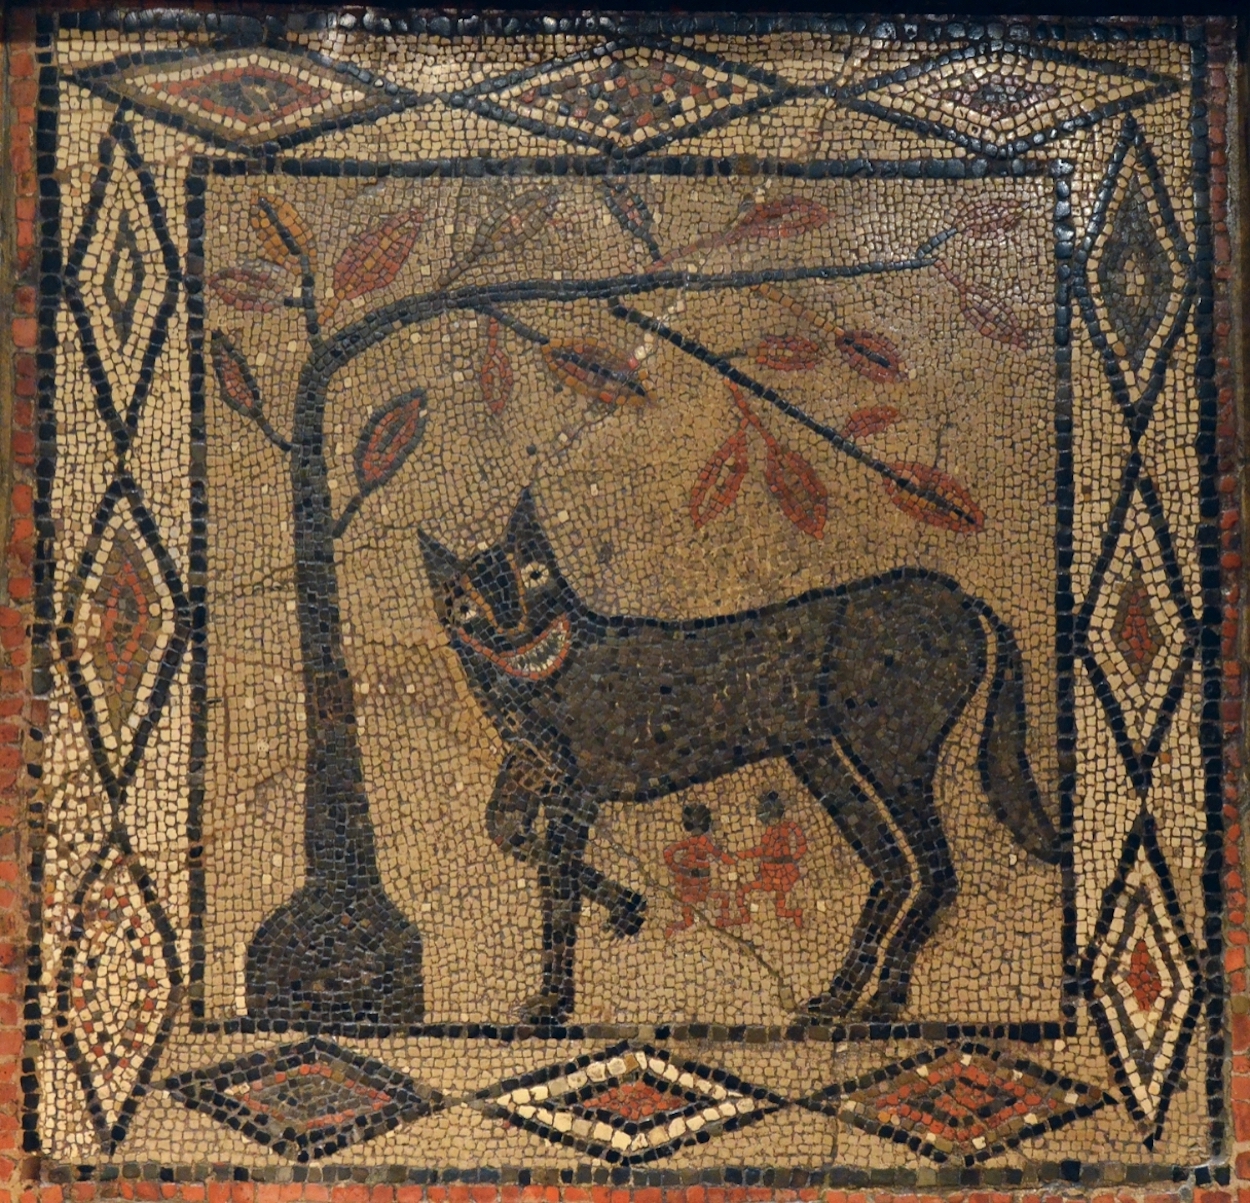 メスオオカミ、ロムルスとレムス by Unknown Artist - 推定3世紀 